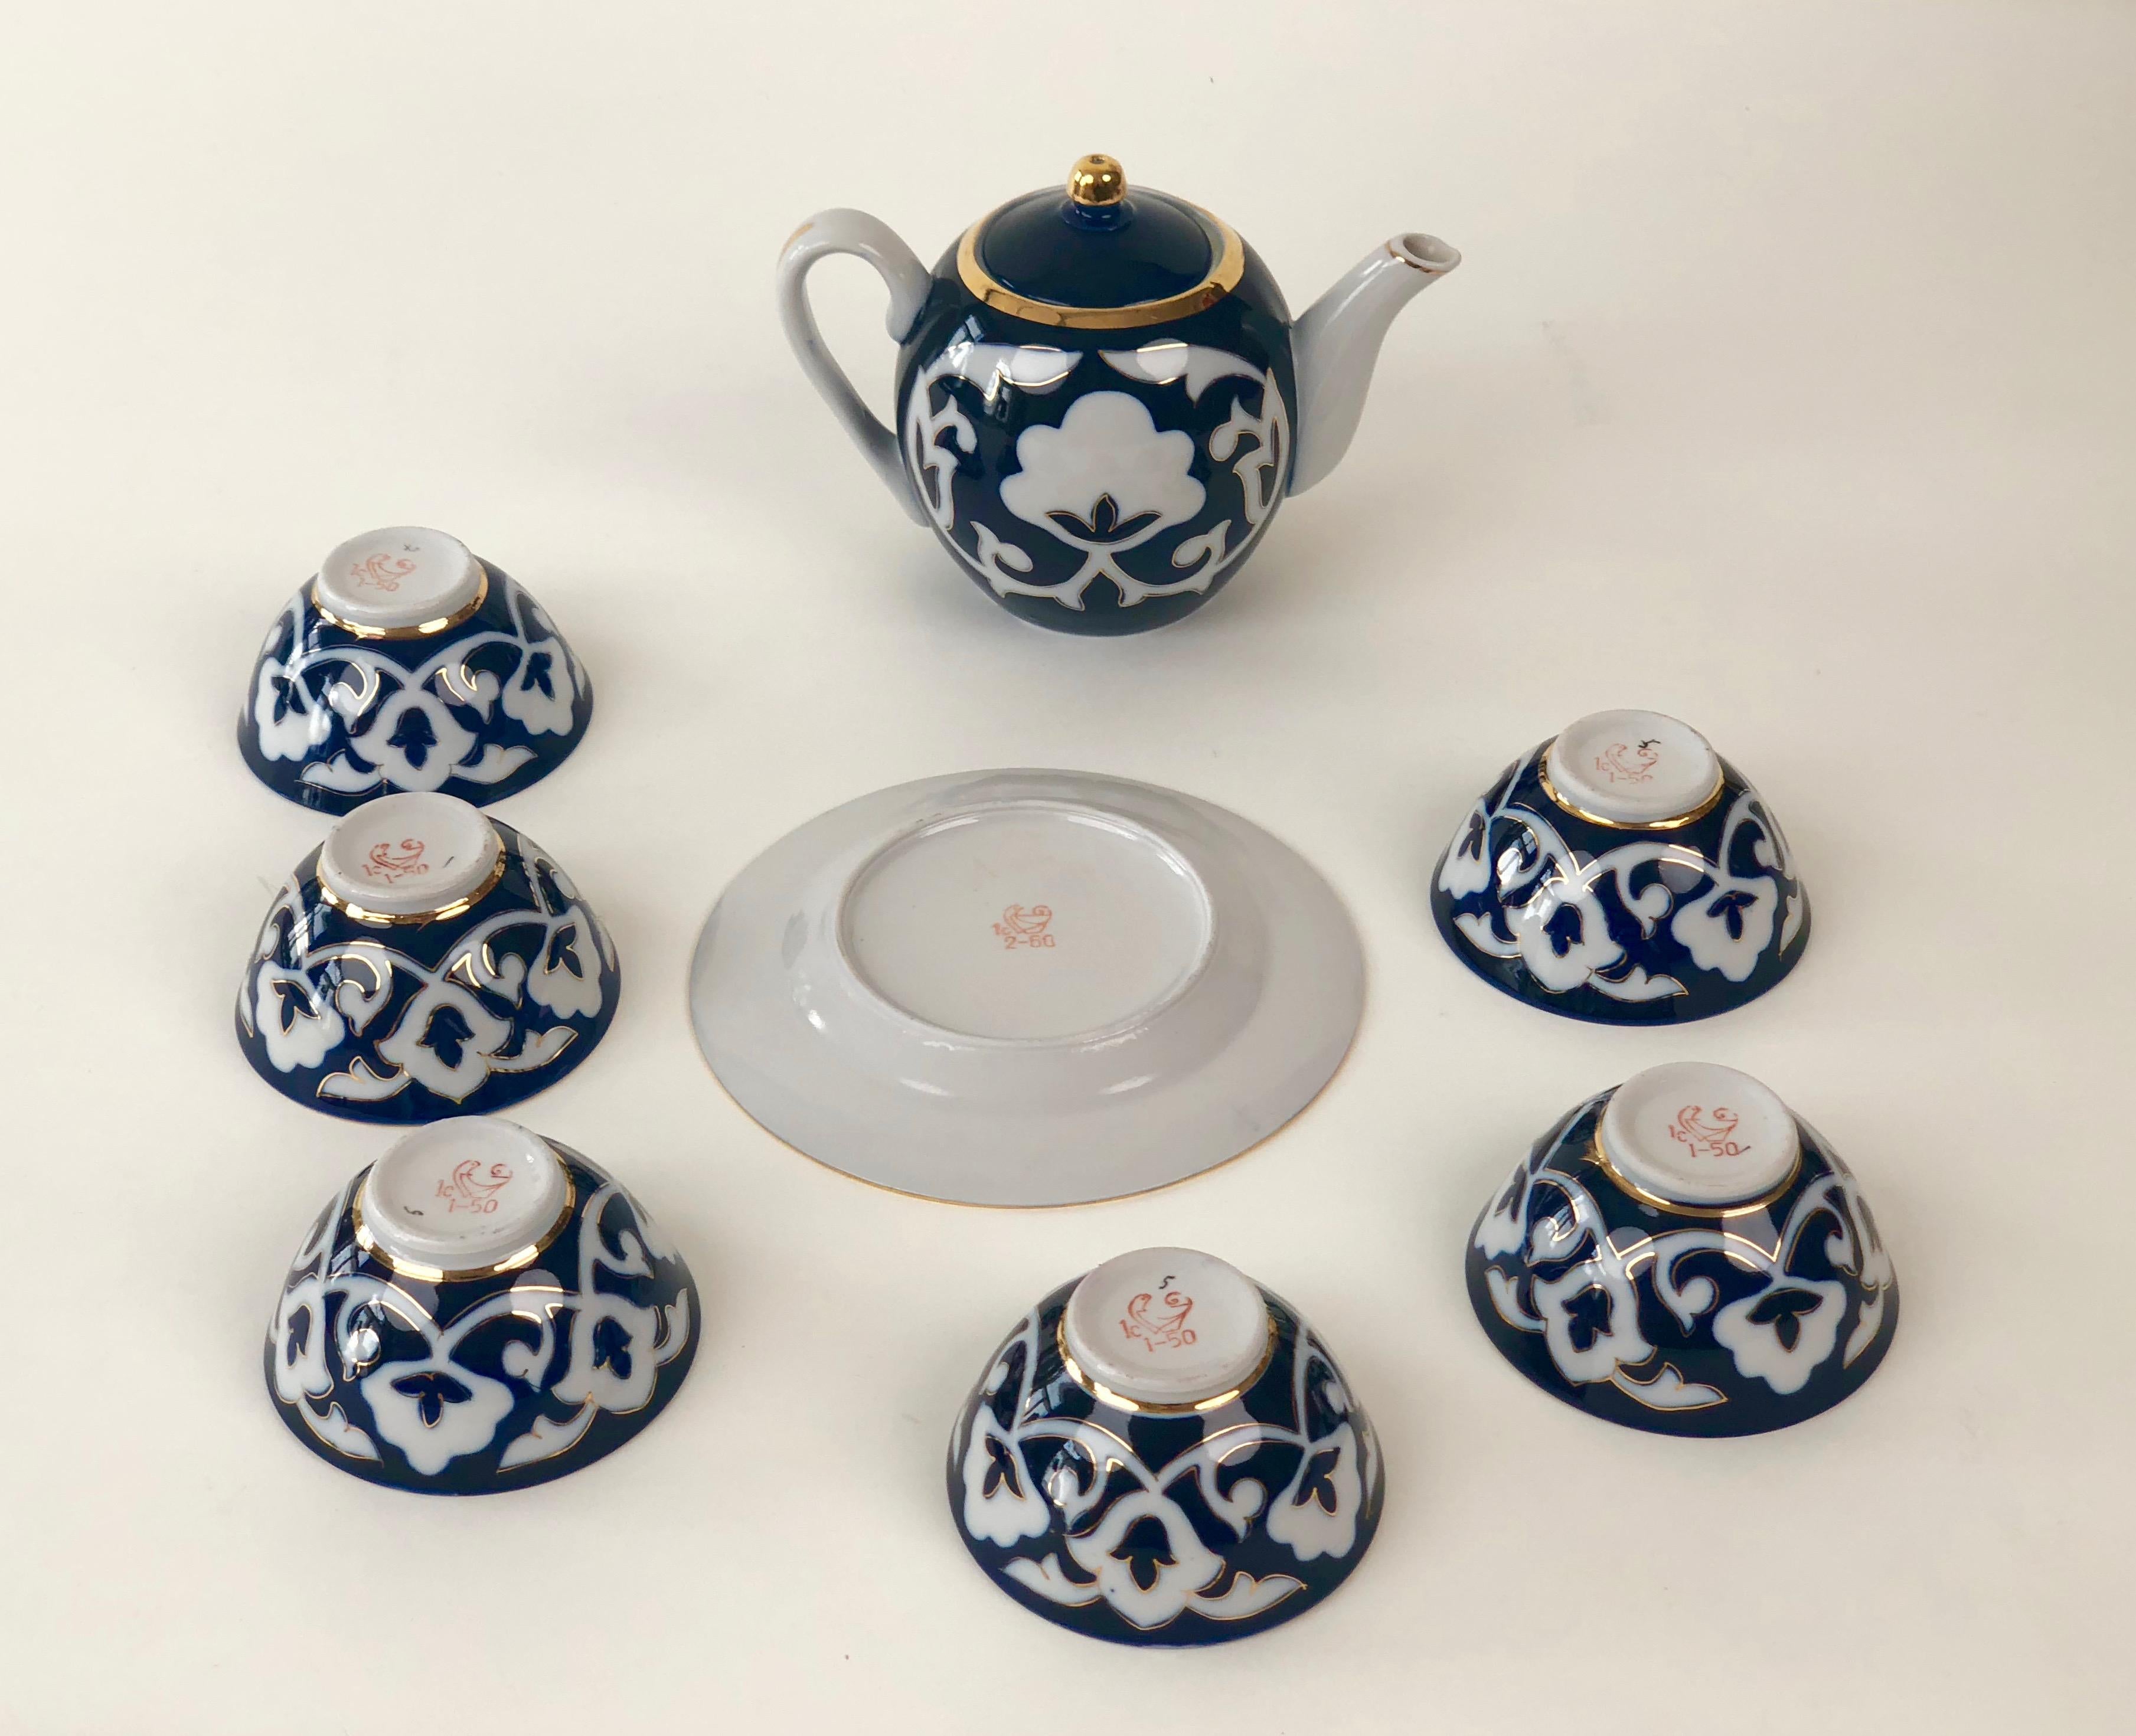 Porzellan-Teeset aus Zentralasien, bestehend aus 6 kleinen Teeschalen, einer Teekanne und einem Teller für Kekse.
Das traditionelle Blumenmuster ist in kobaltblauer Glasur gehalten, die handgemalten Details sind in massivem Gold.

Alle Stücke